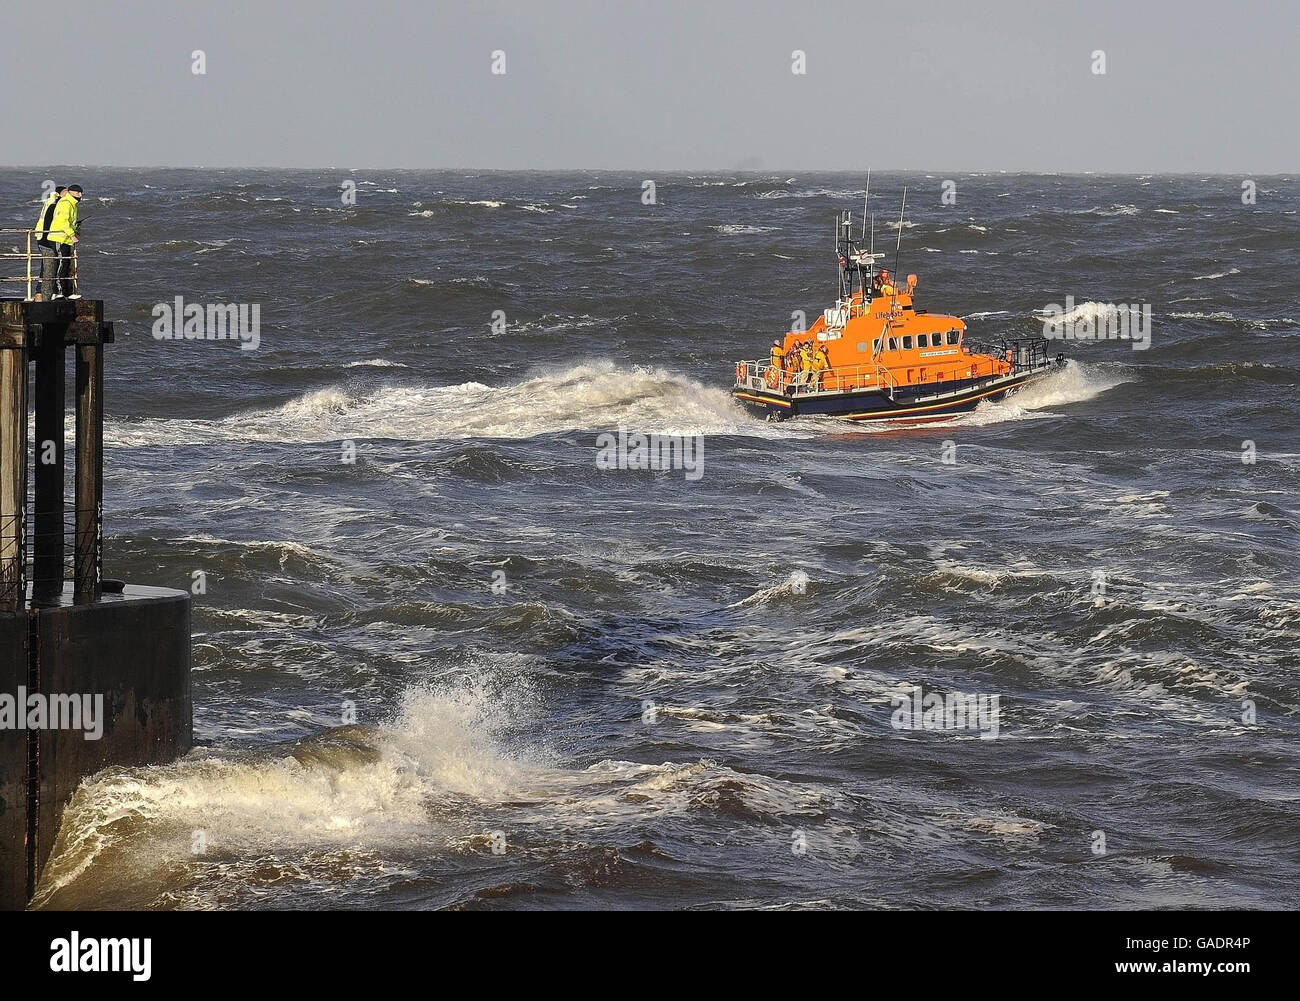 L'equipaggio di Whitby Lifeboat torna dopo aver salvato l'equipaggio di una piccola barca che affondava oggi in acque difficili fuori Whitby Harbour. Foto Stock